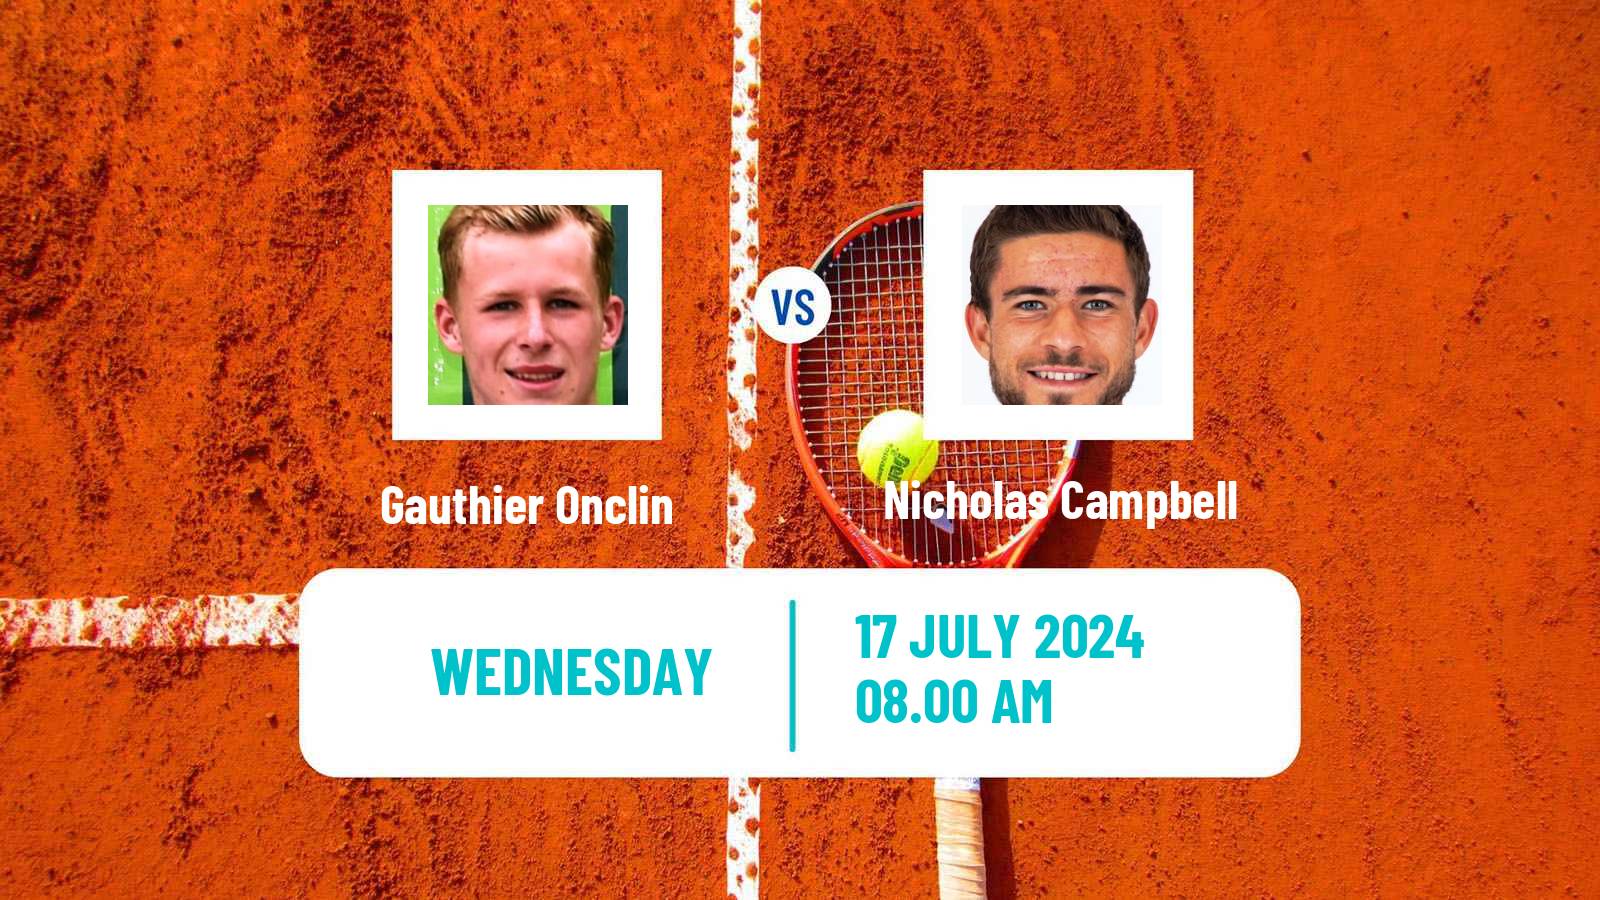 Tennis ITF M25 Esch Alzette 2 Men Gauthier Onclin - Nicholas Campbell